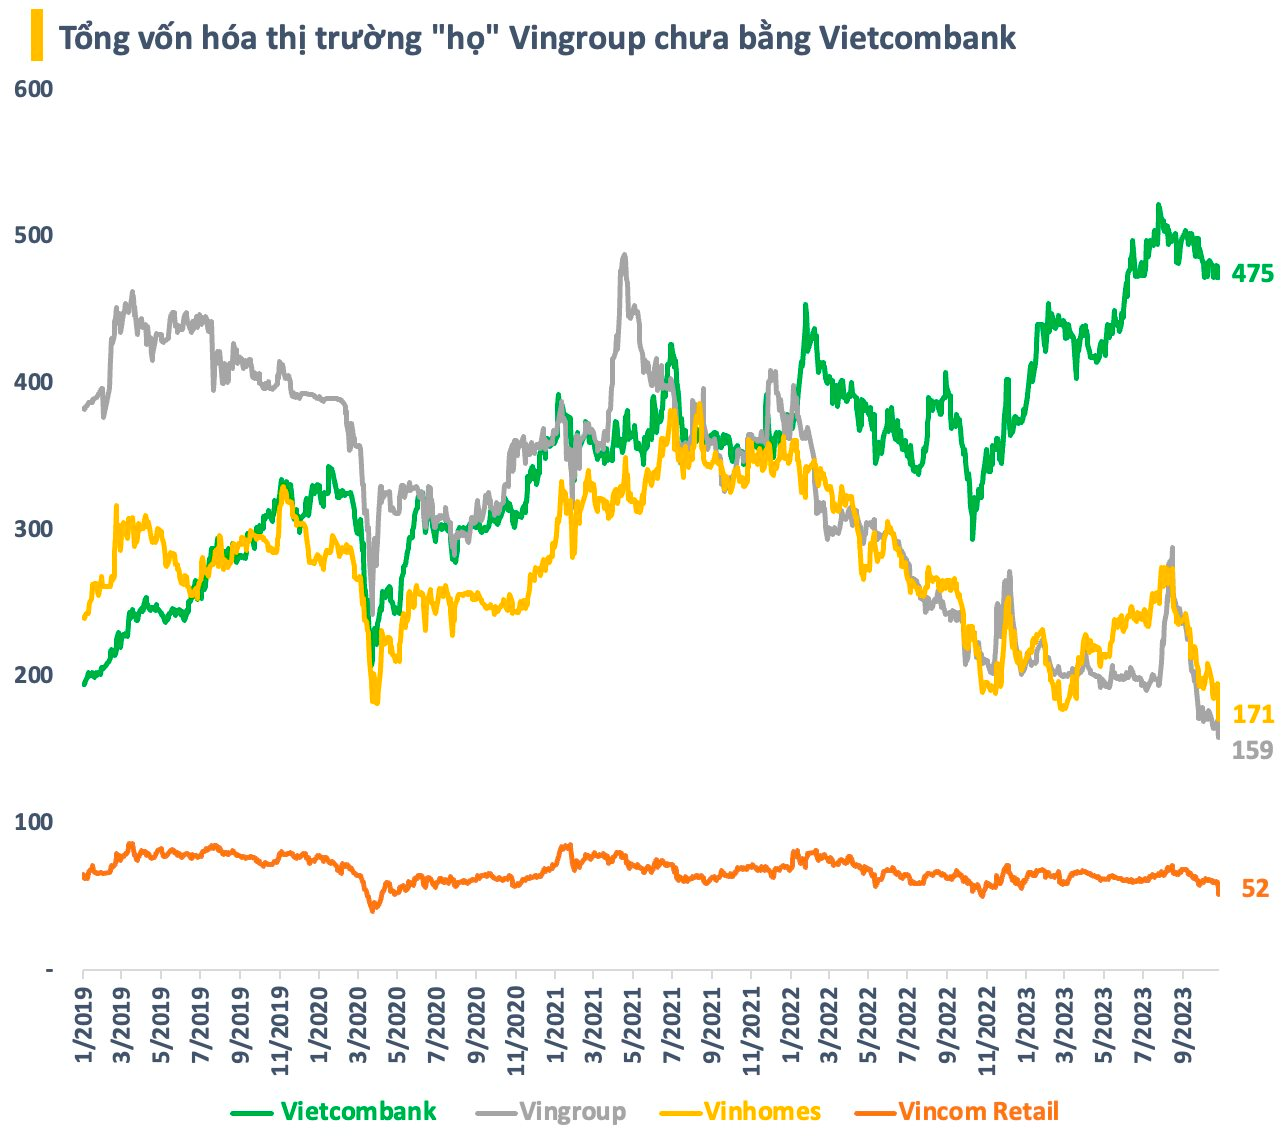 Từng chiếm gần 1/4 giá trị sàn chứng khoán Việt Nam, tổng vốn hóa “họ” Vingroup giờ chưa bằng Vietcombank - Ảnh 1.